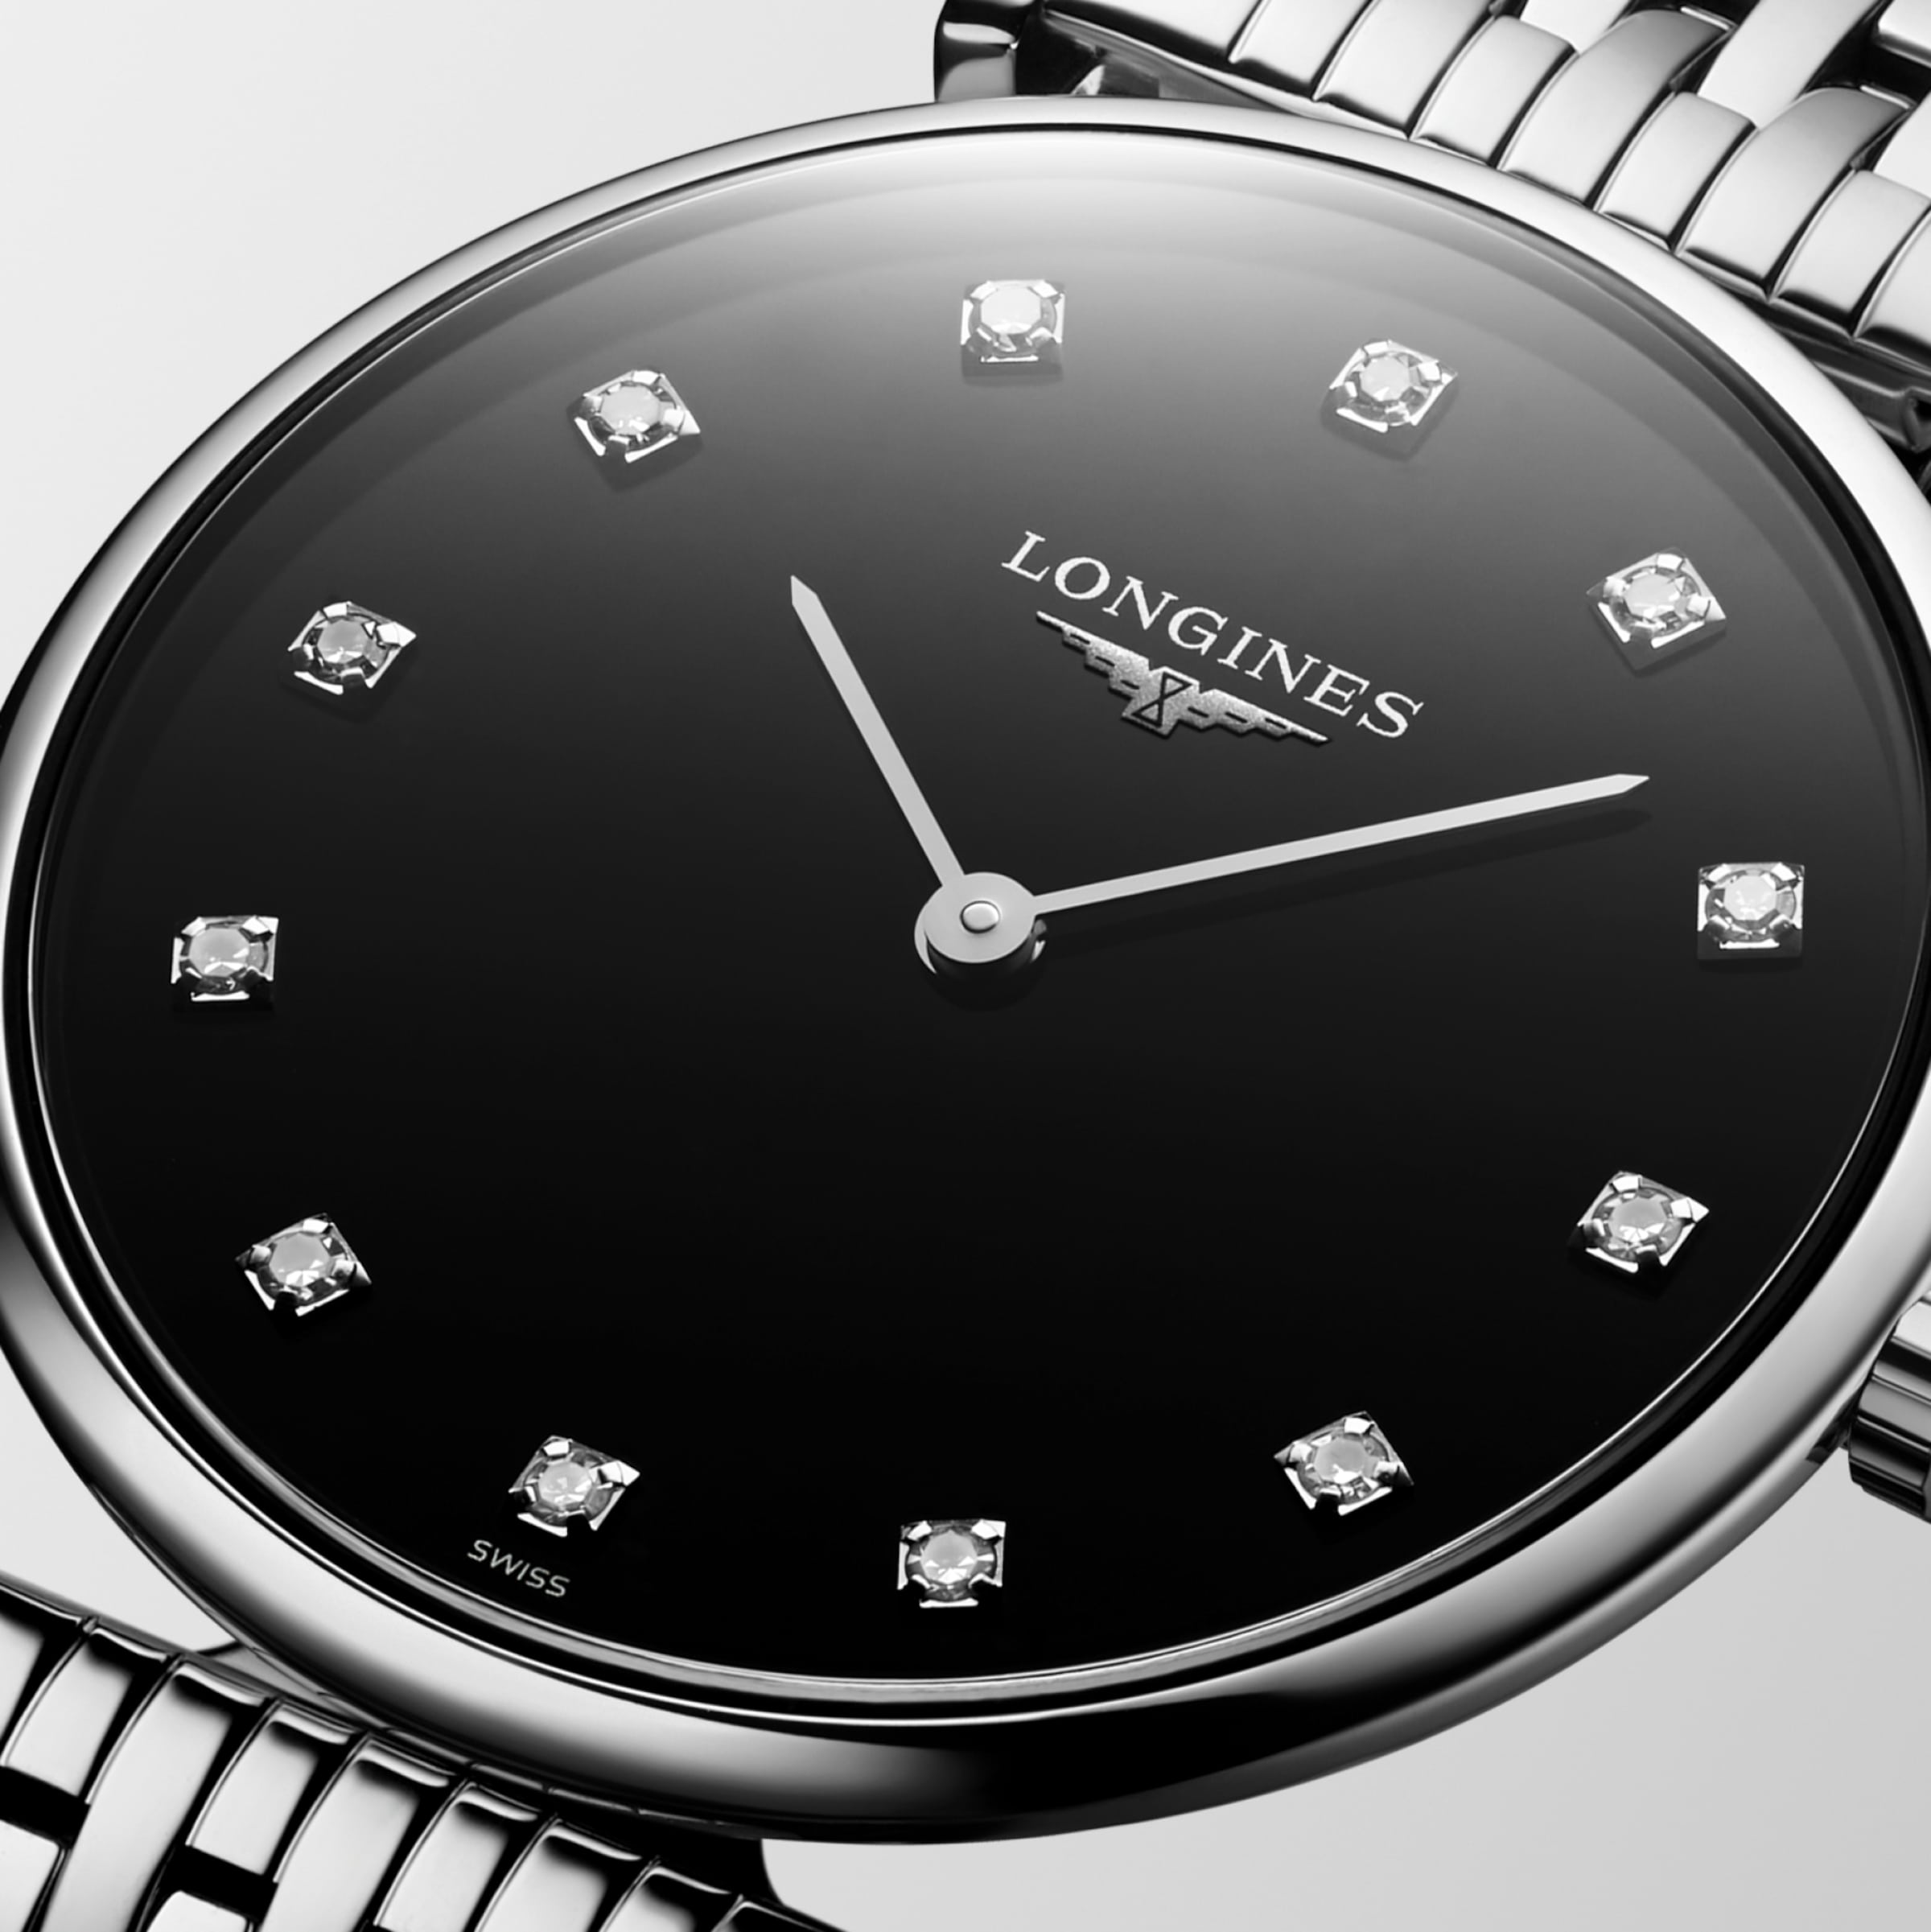 Longines LA GRANDE CLASSIQUE DE LONGINES Quartz Stainless steel Watch - L4.512.4.58.6